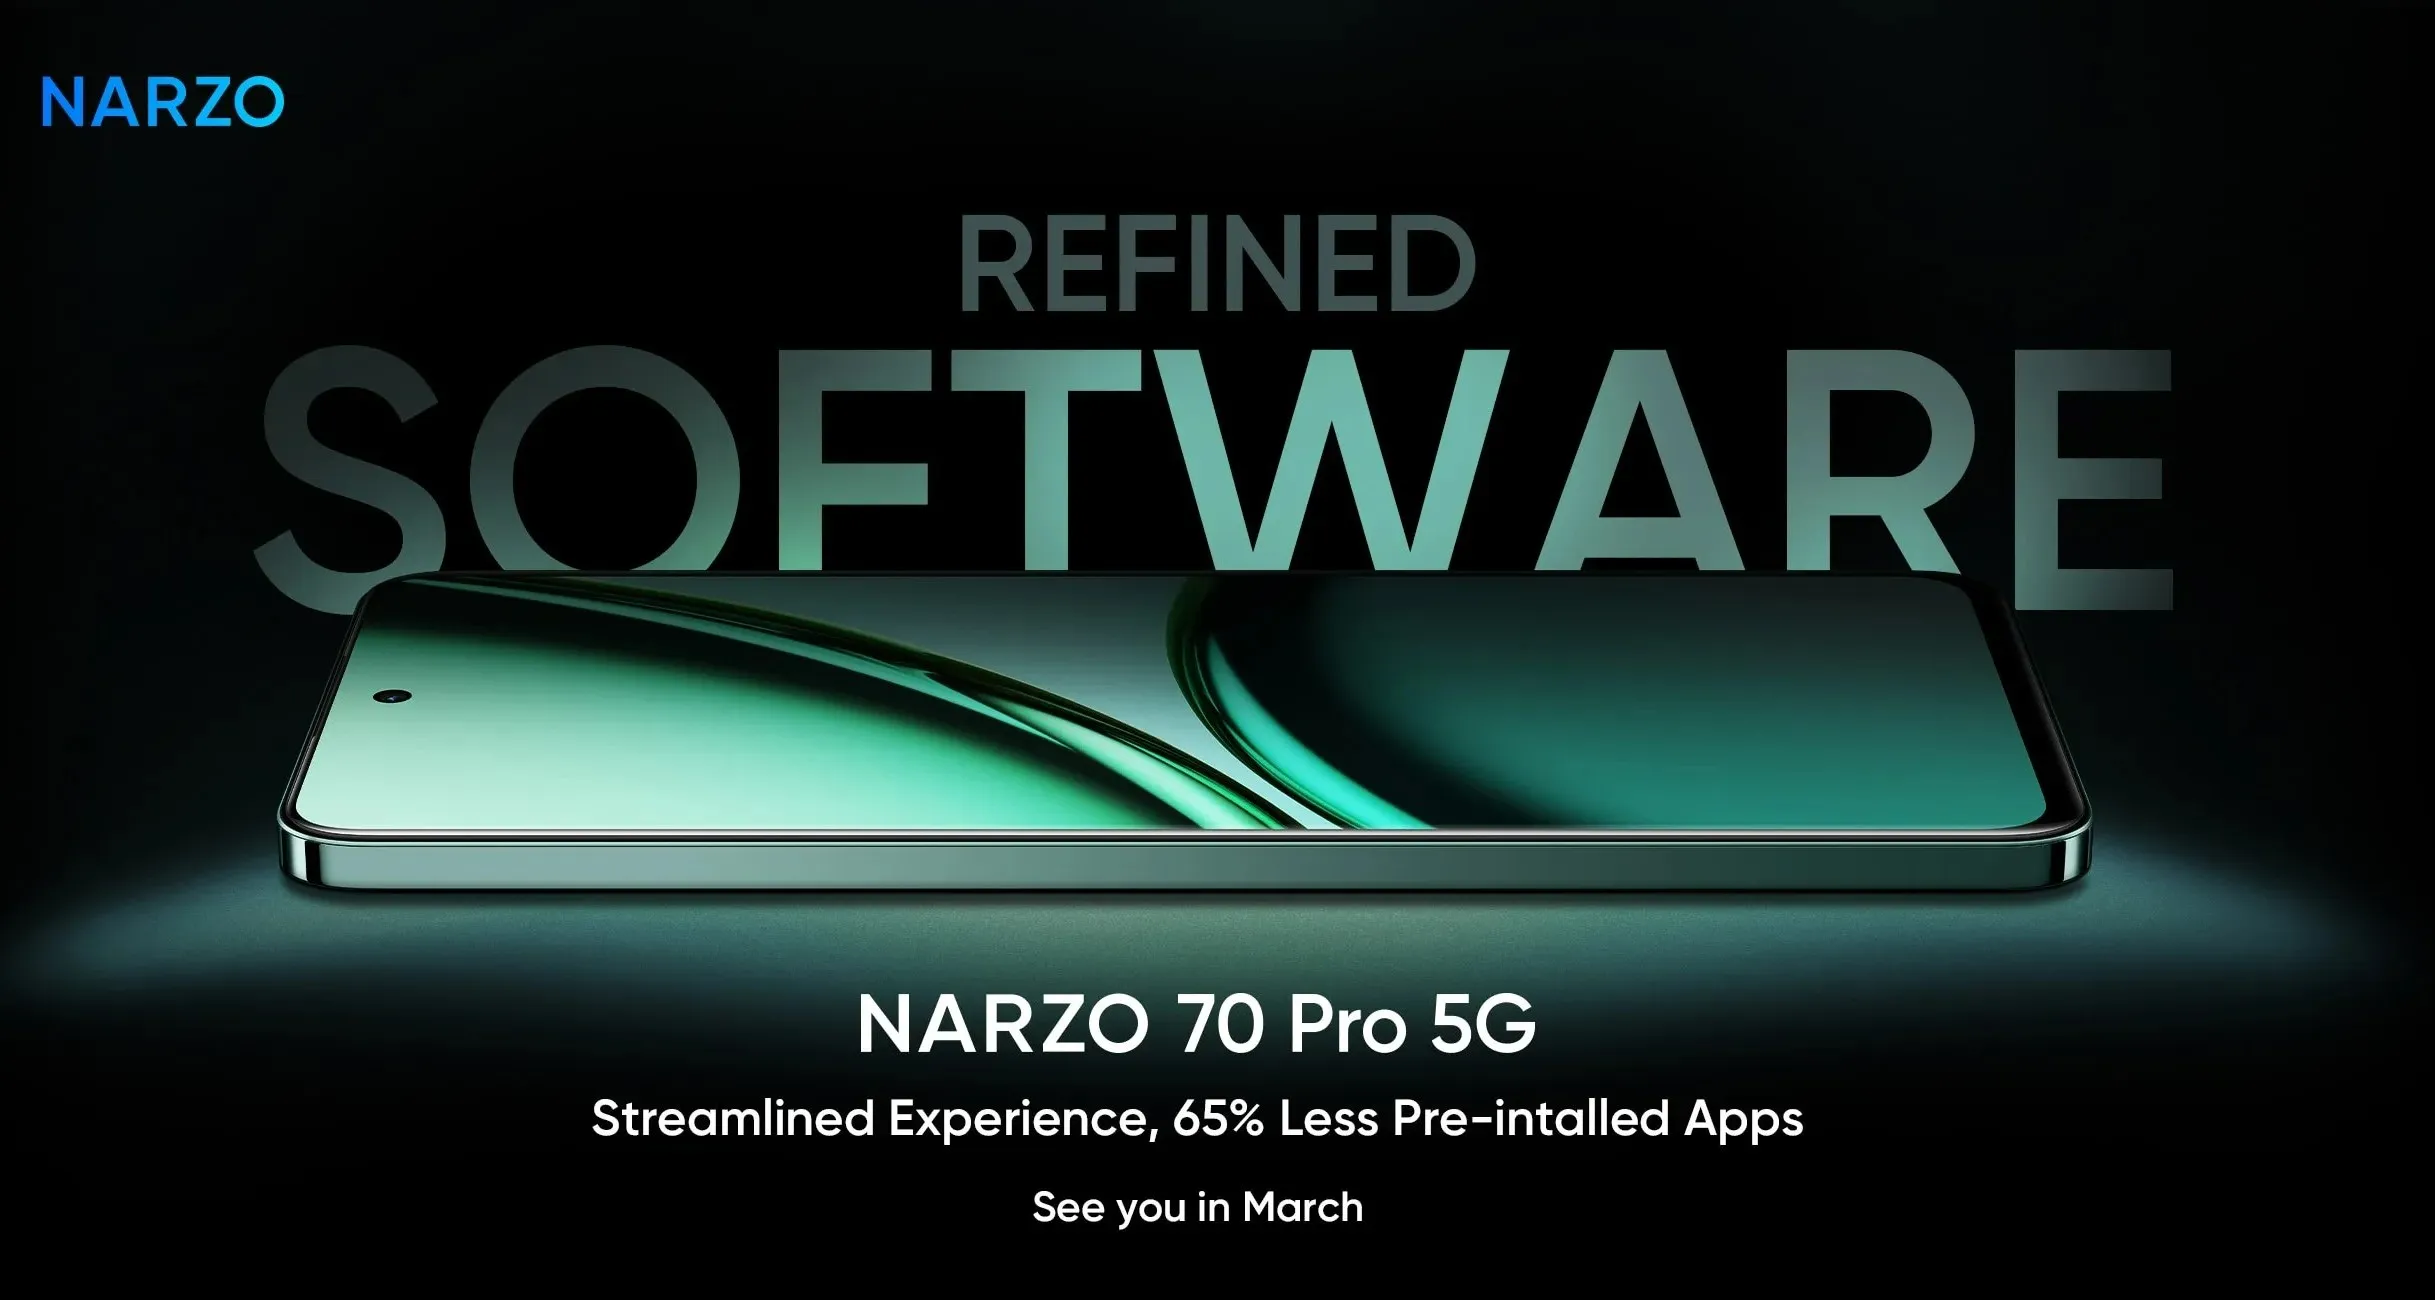 Meluncur 19 Maret Mendatang, Realme Narzo 70 Pro 5G Gandeng Fitur Air Gesture, Berapa Harganya? 